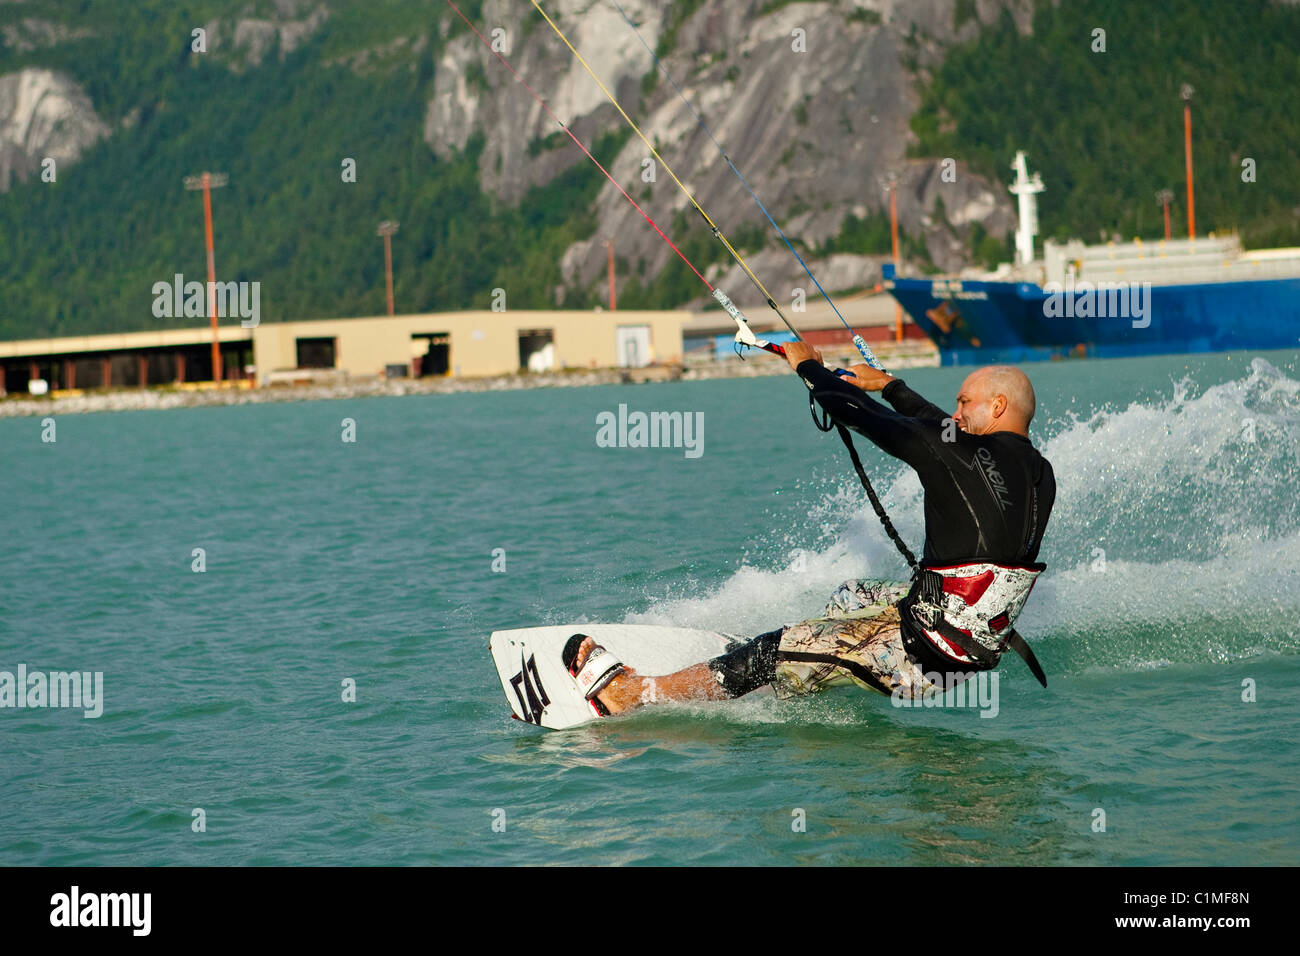 Un kiteboarder attrape le vent à 'la flèche', Squamish, BC, Canada Banque D'Images